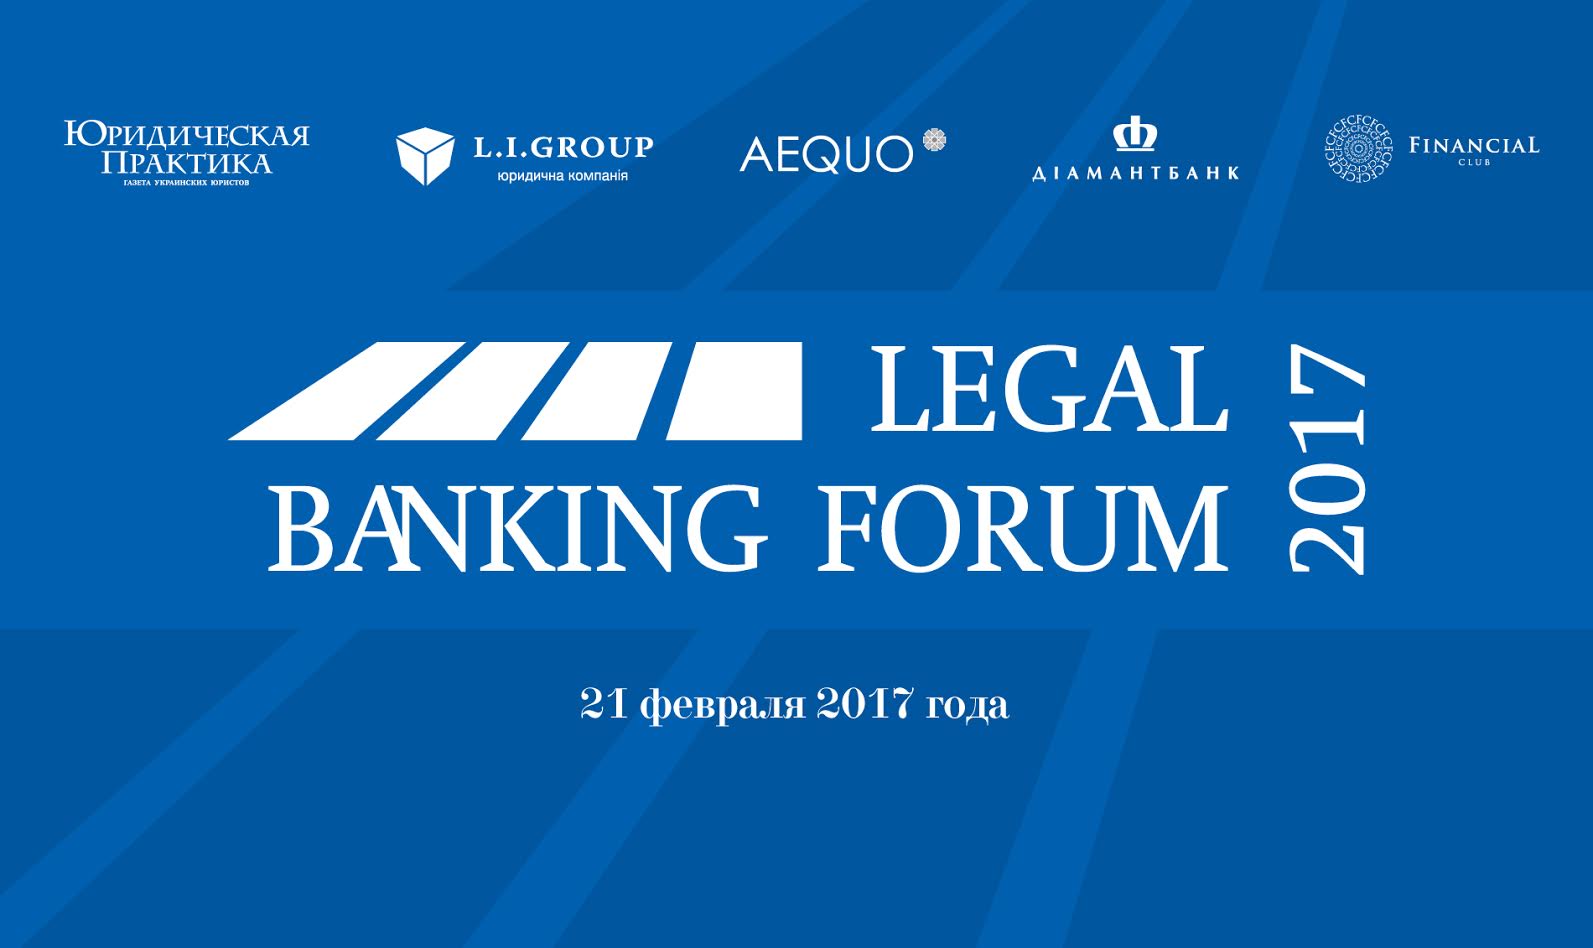 Legal forum